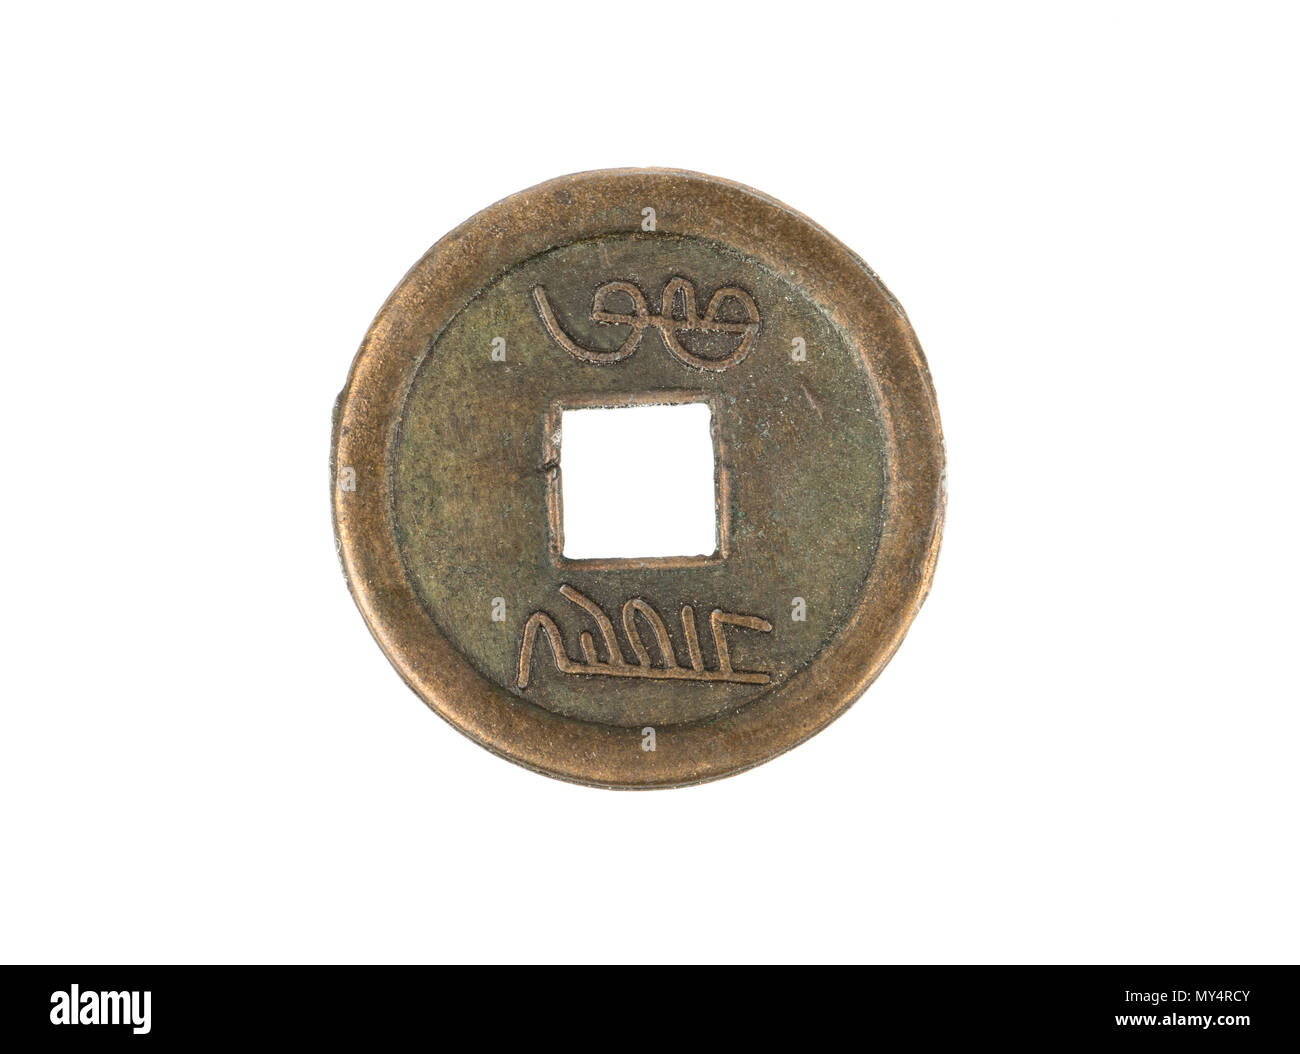 China antigua moneda de cobre para suerte aislado sobre fondo